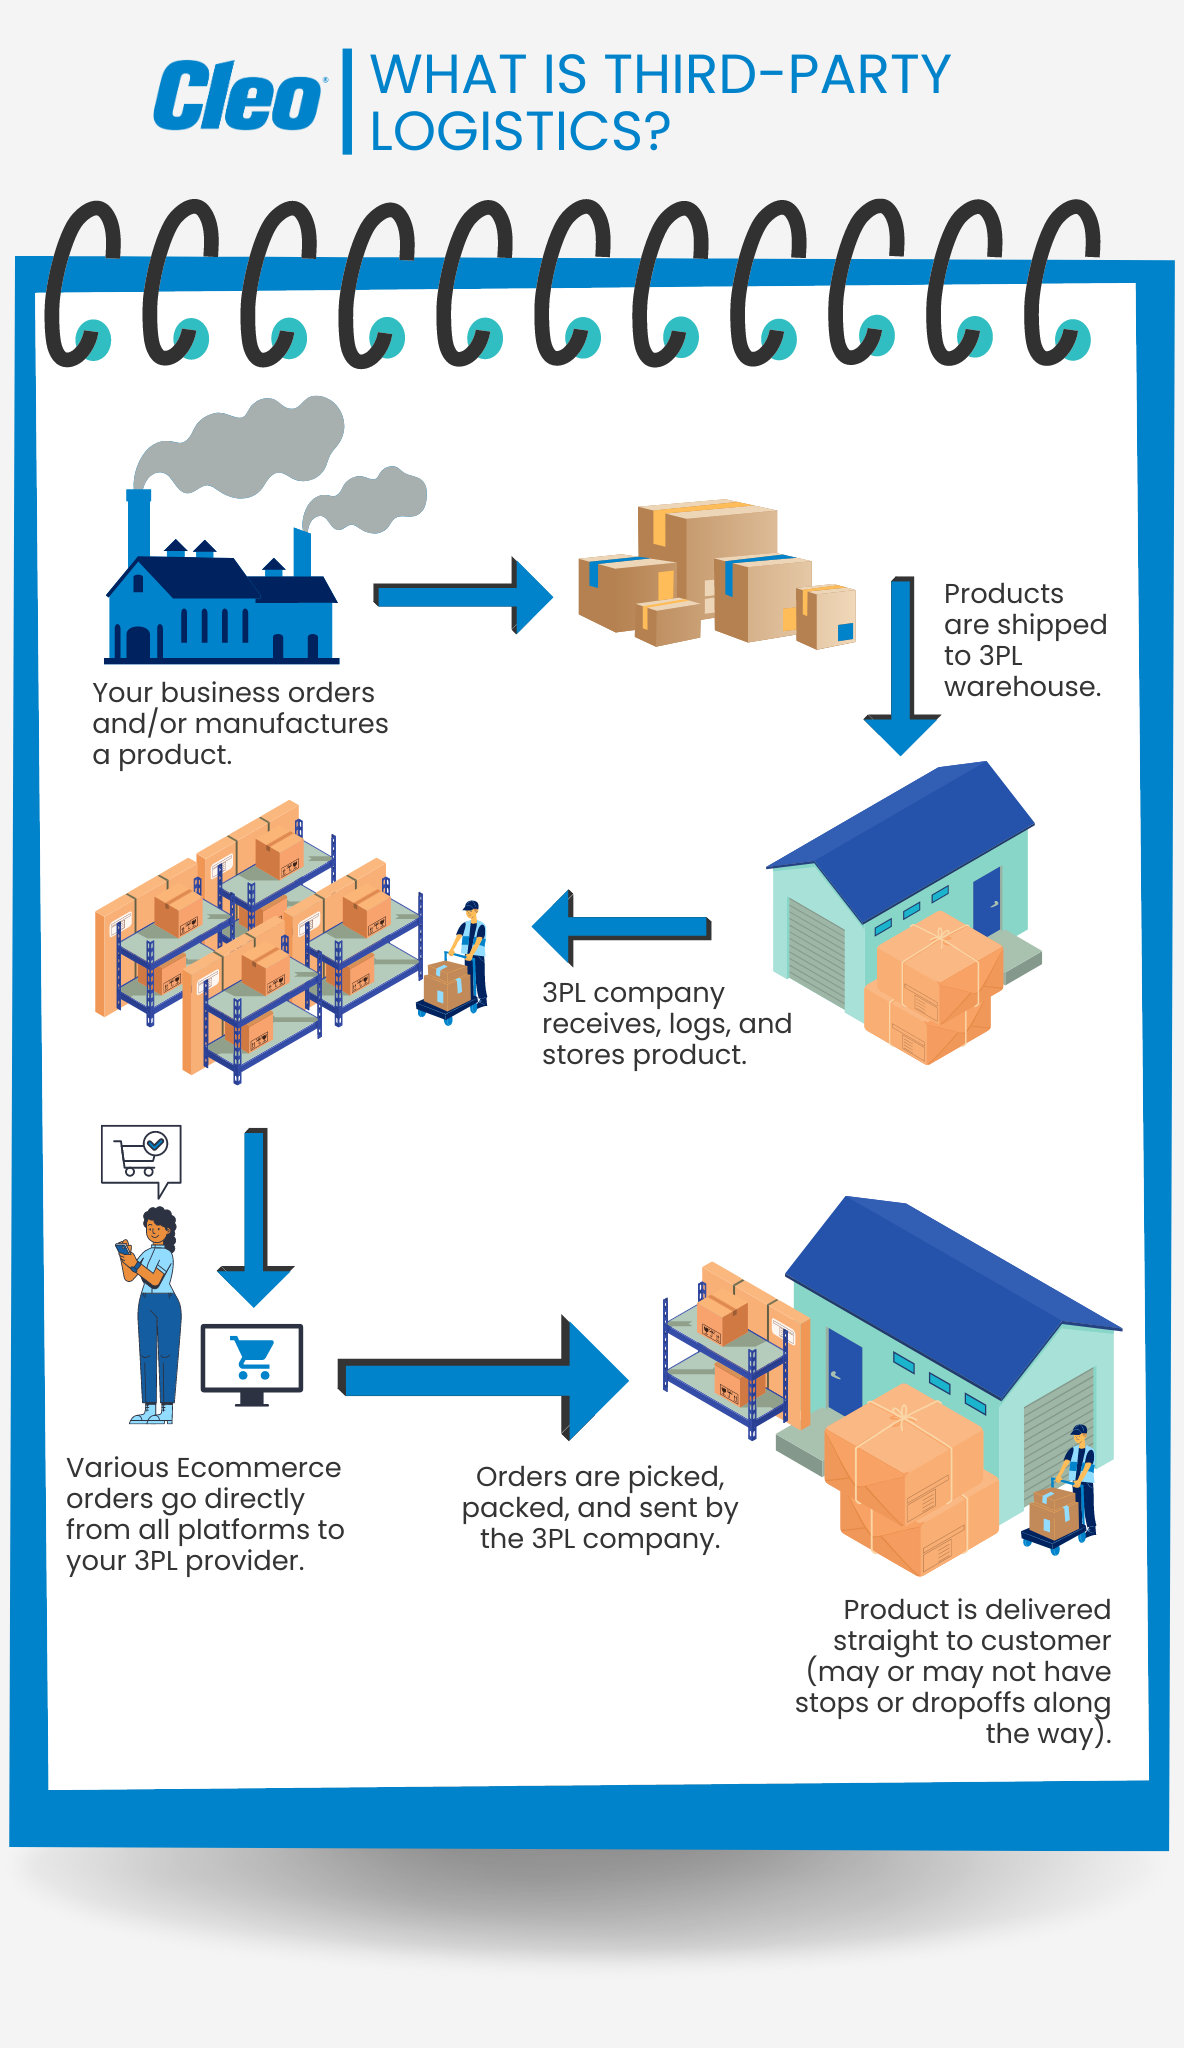 Third-party logistics (3PL) process description infographic